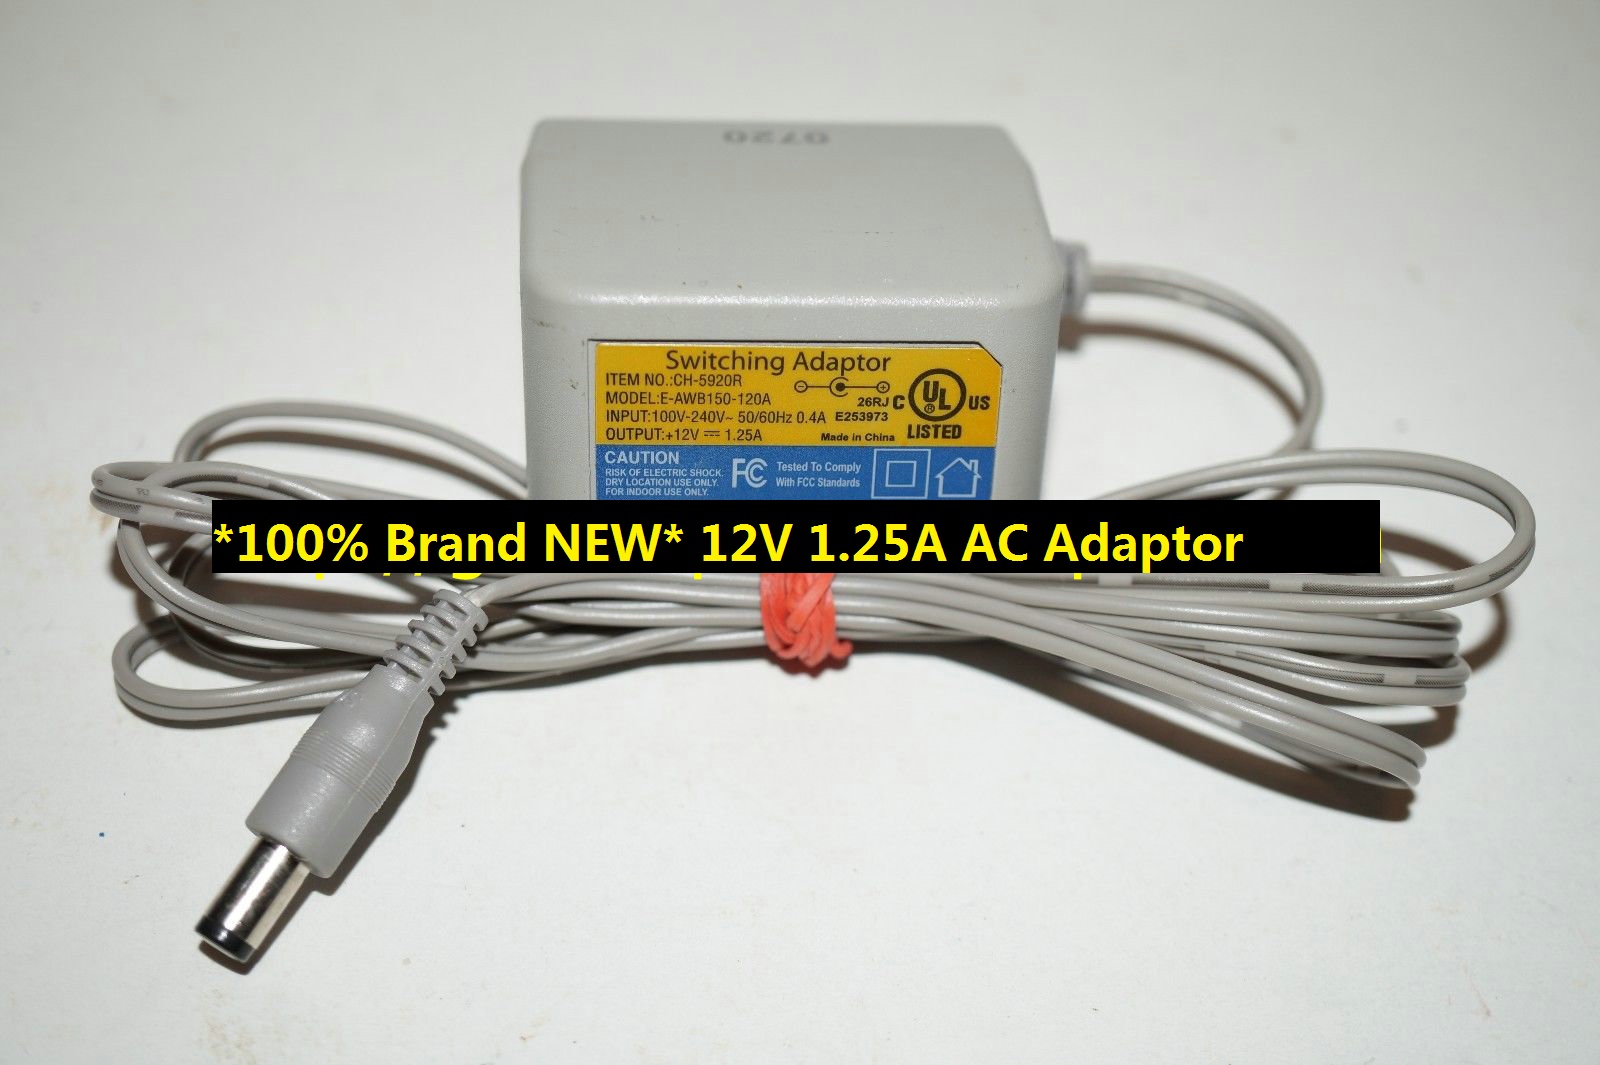 *100% Brand NEW* Digital Concepts E-AWB150-120A for Digital Concepts CH5920R 12V 1.25A AC Adaptor Po